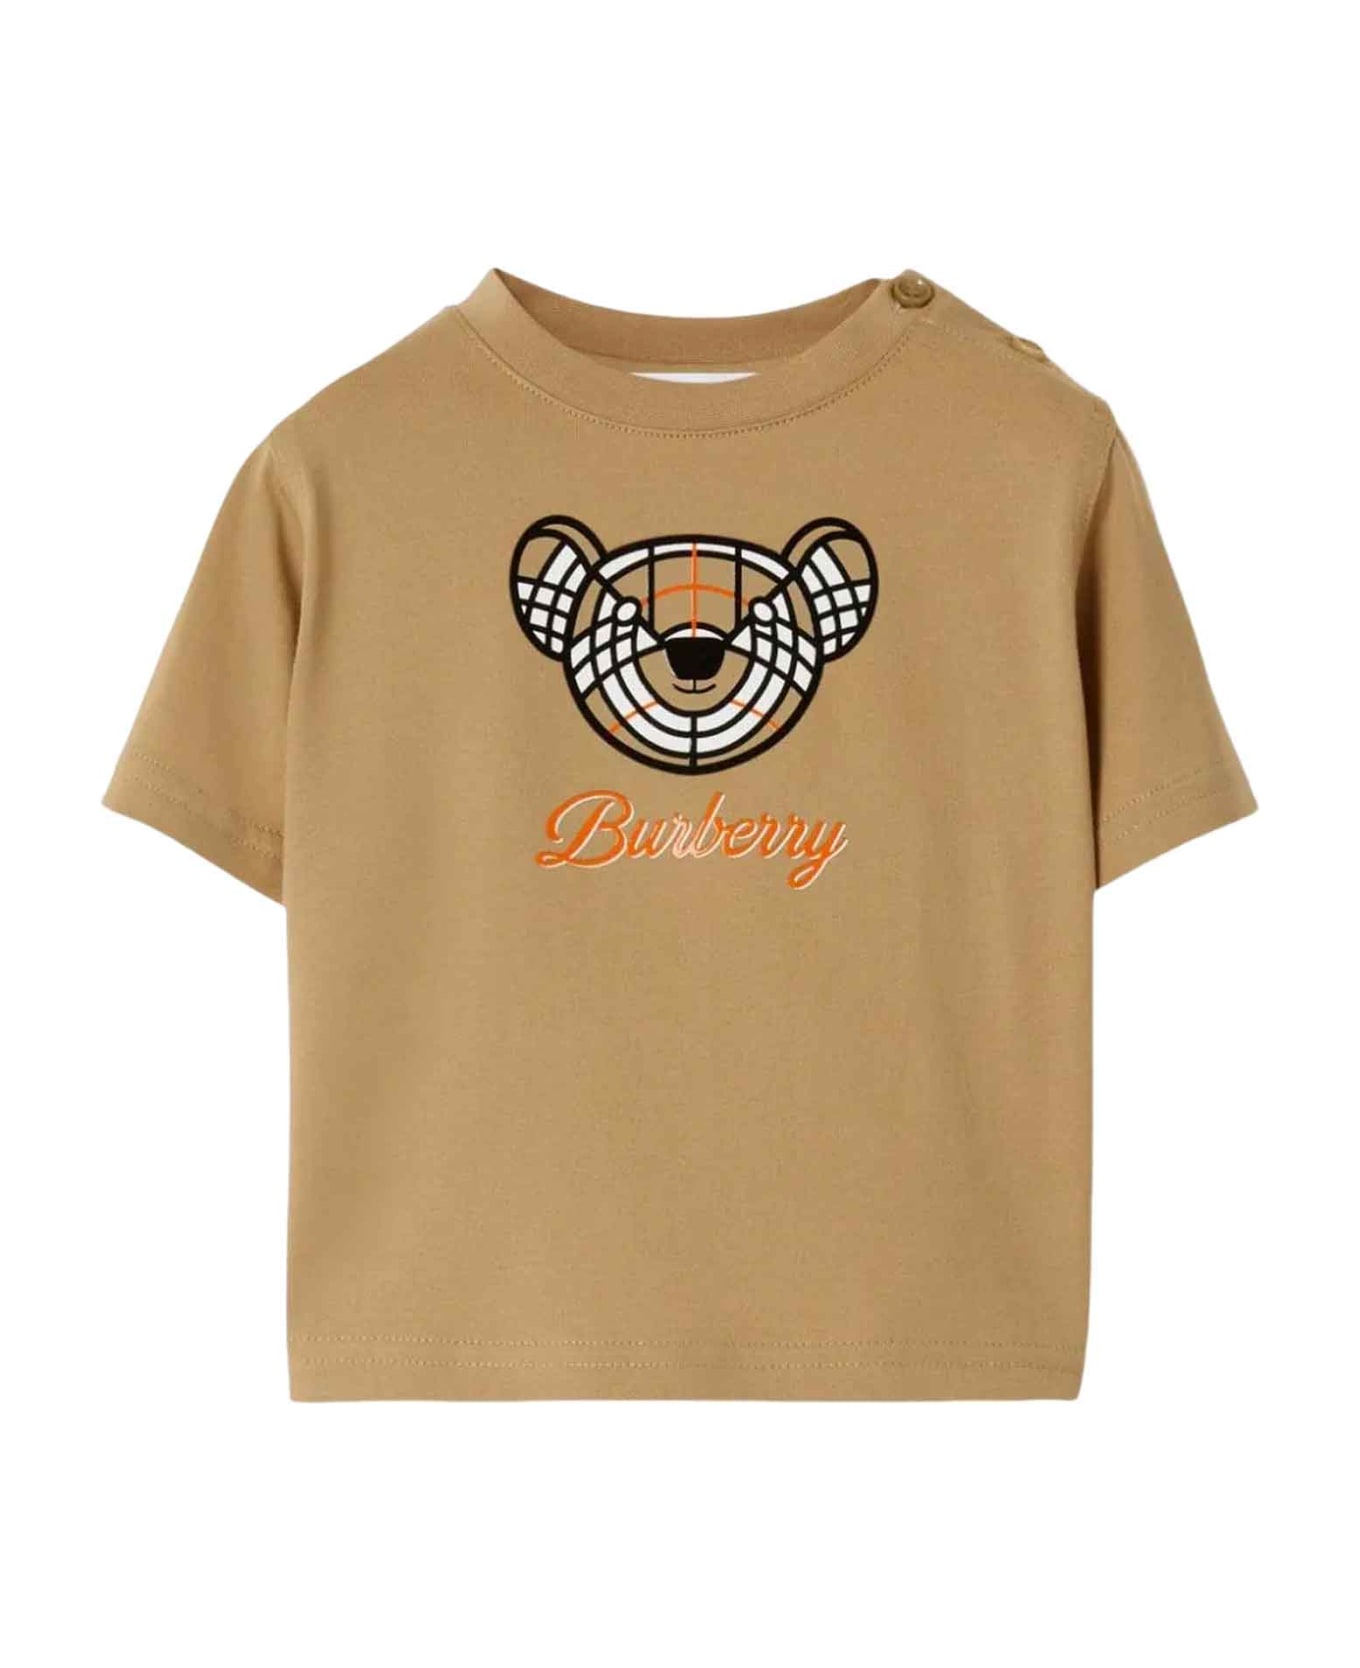 Burberry Beige T-shirt Baby Girl - Beige